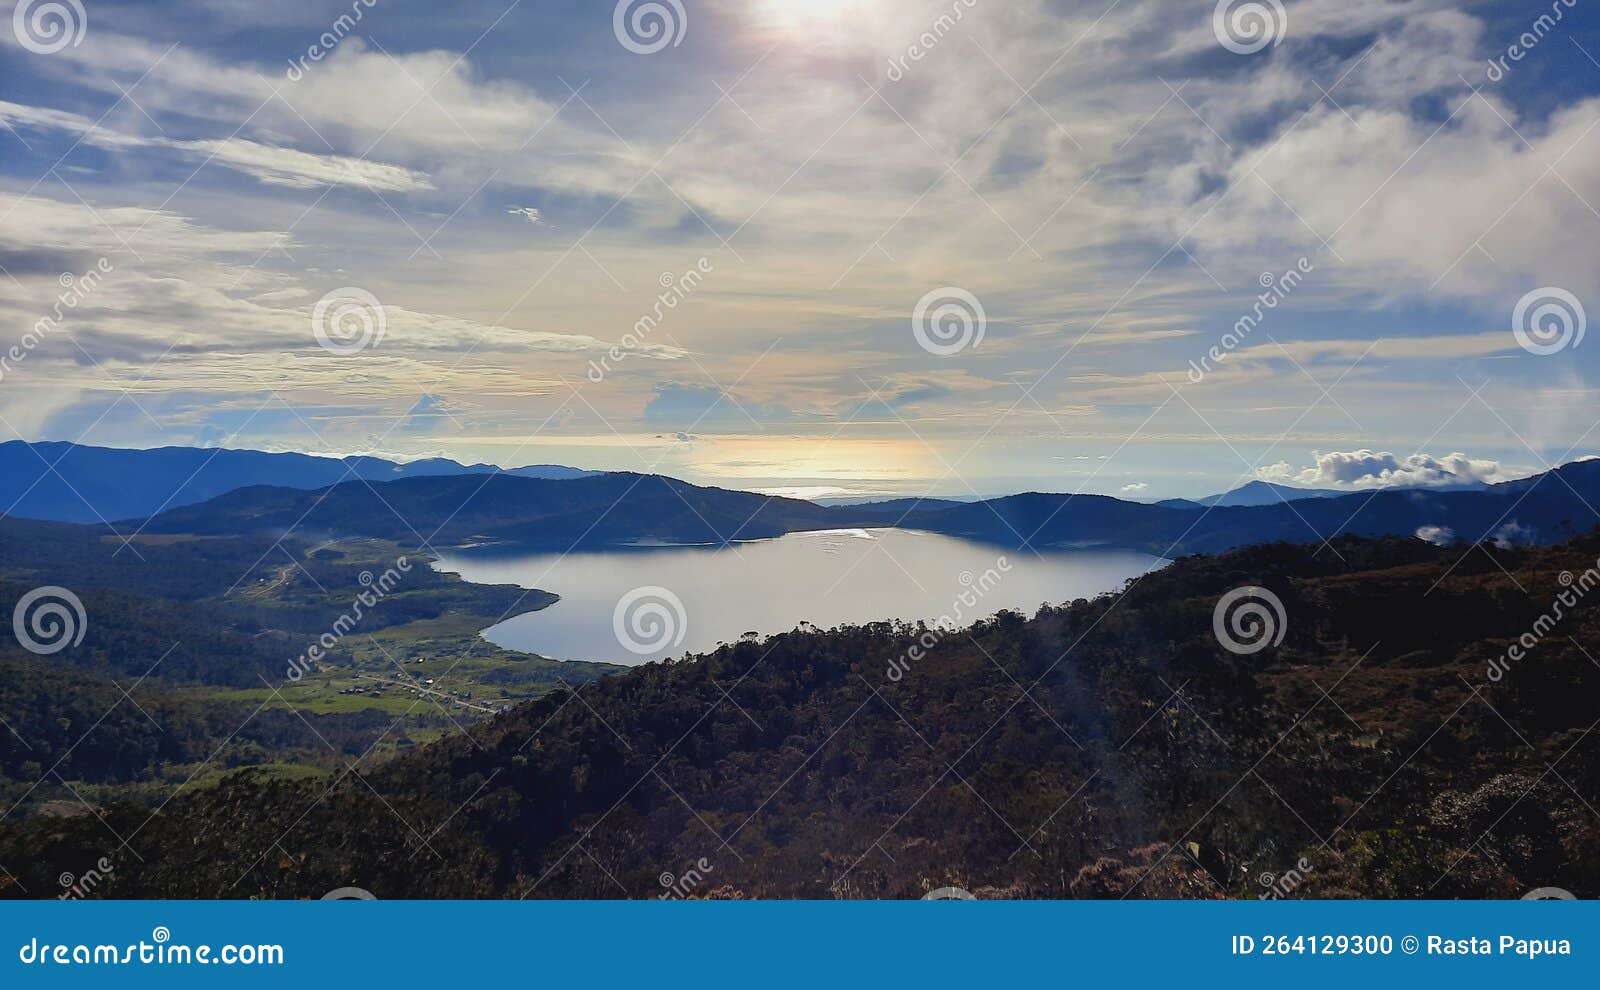 lake anggi manokwari south